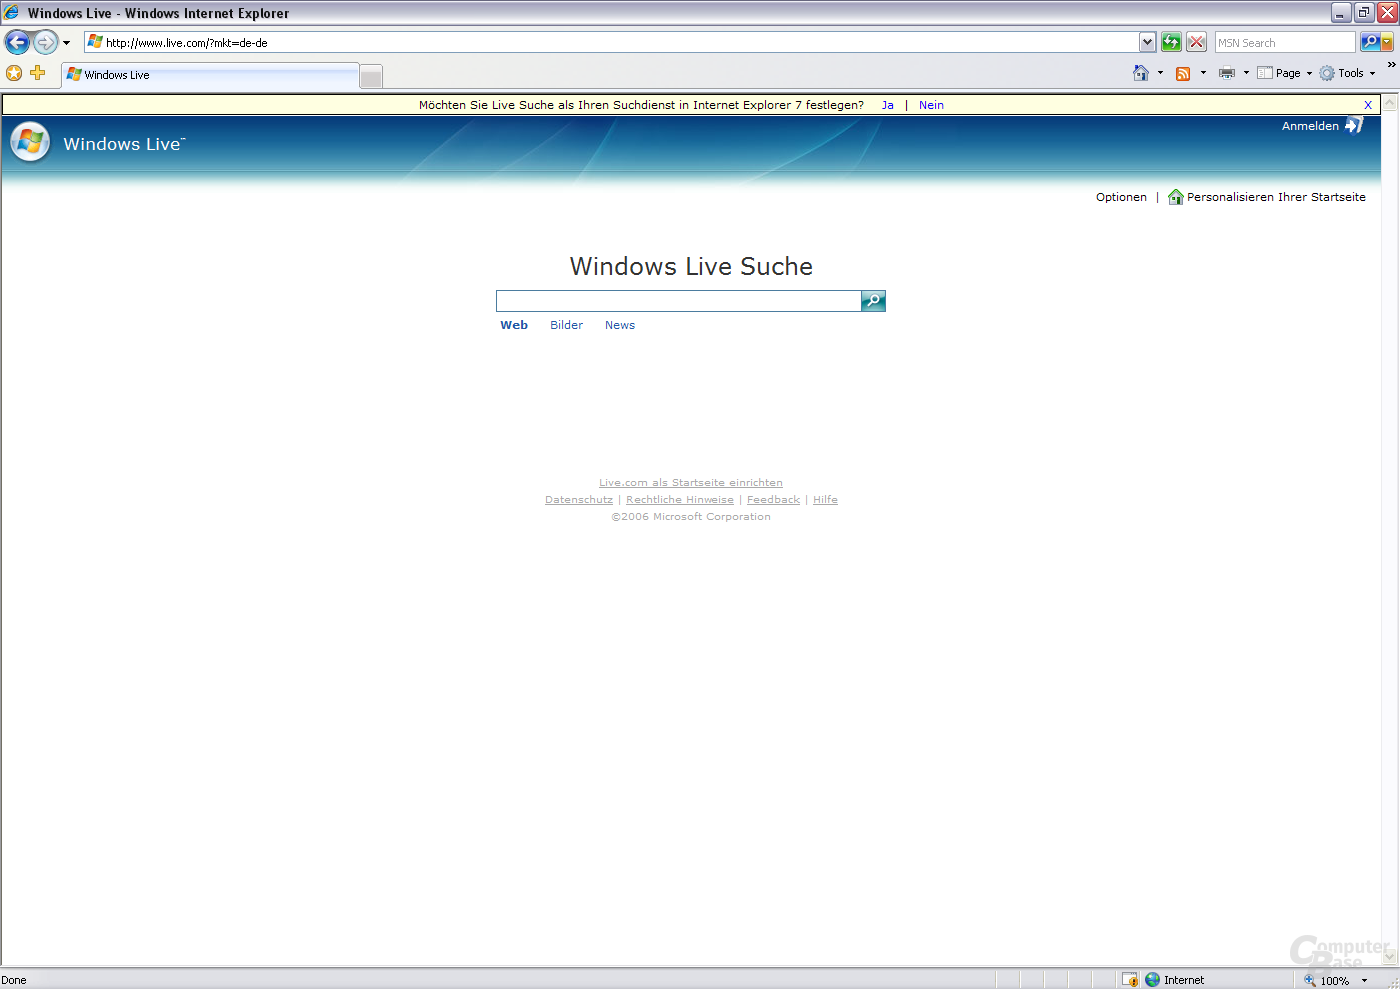 Microsoft Live Suche